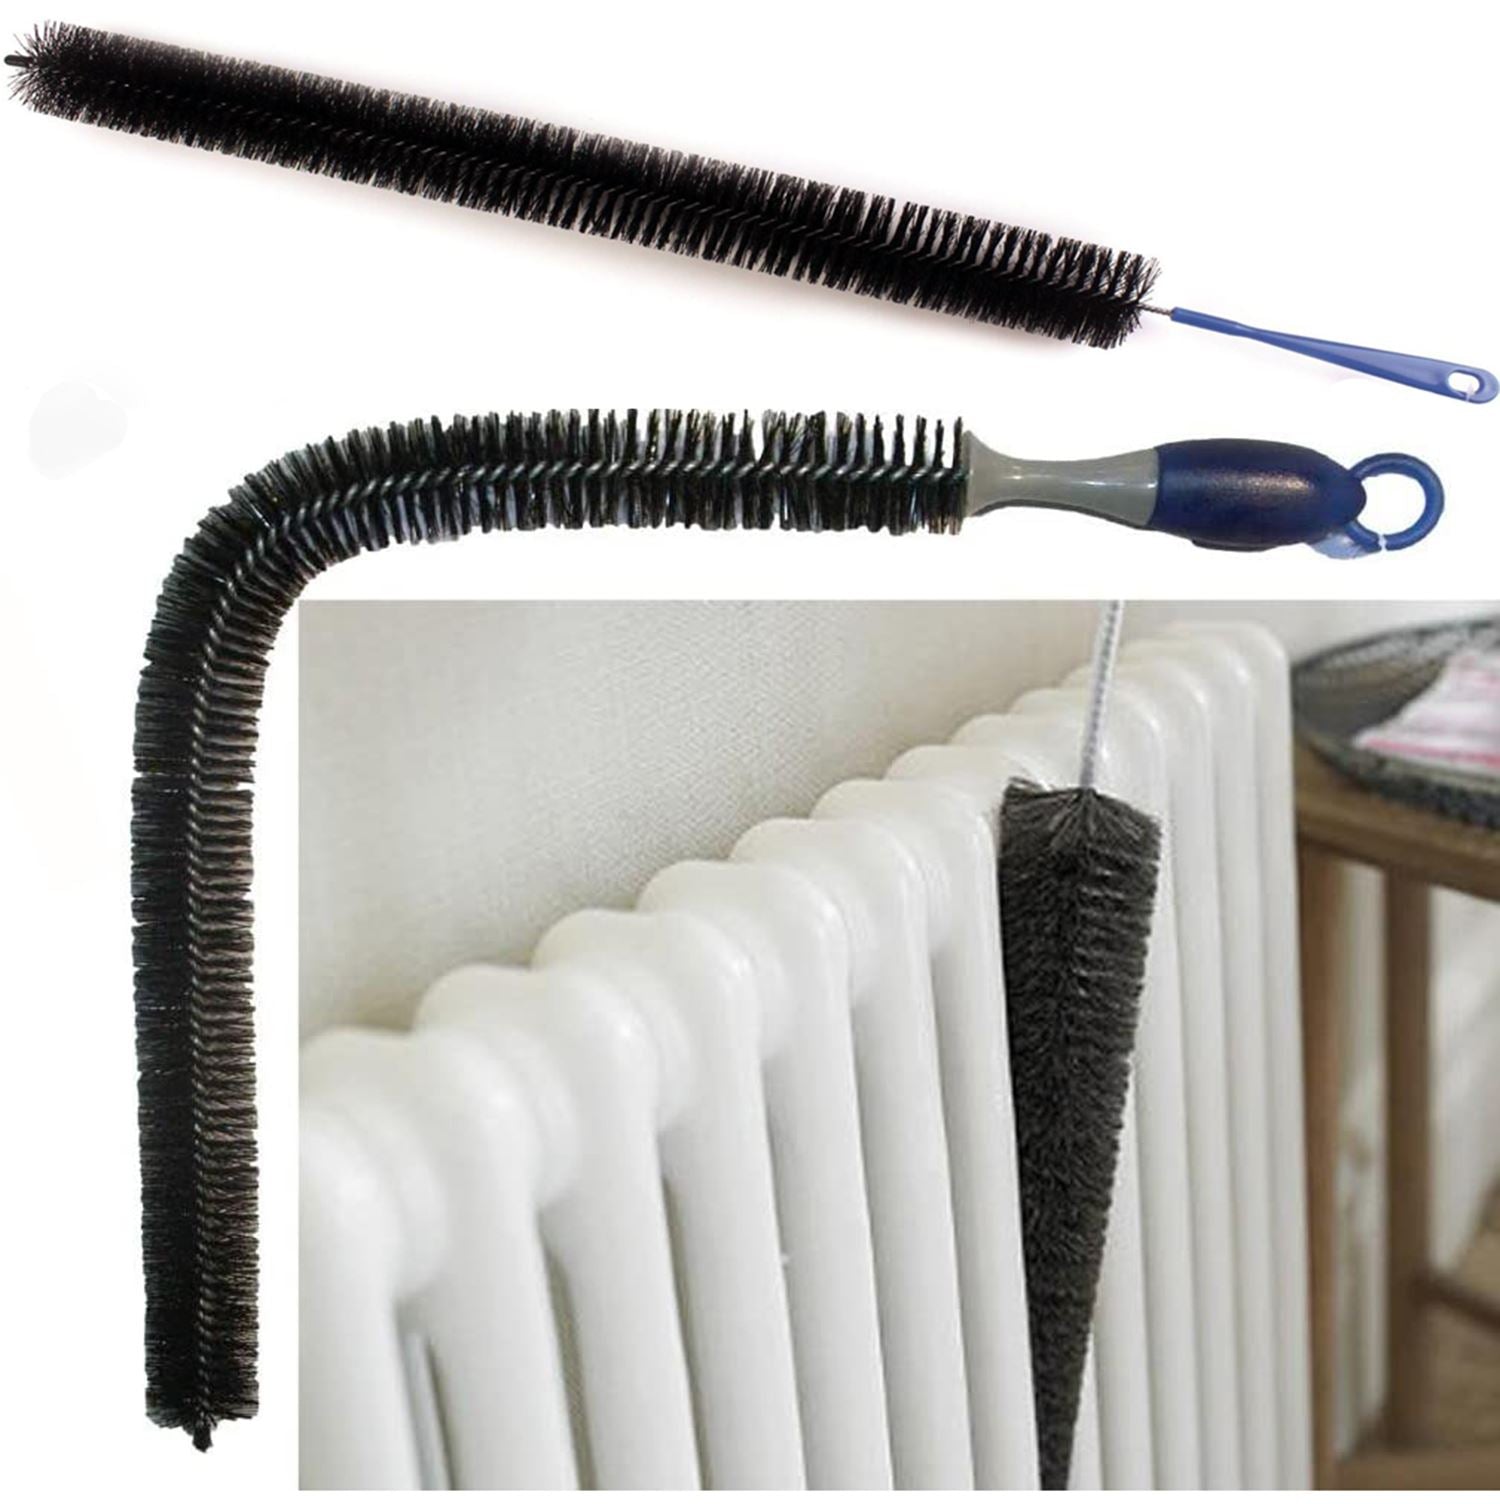 2Pcs Radiator Brush, Dryer Cleaner Vent Brush, 40cm Long Flexible